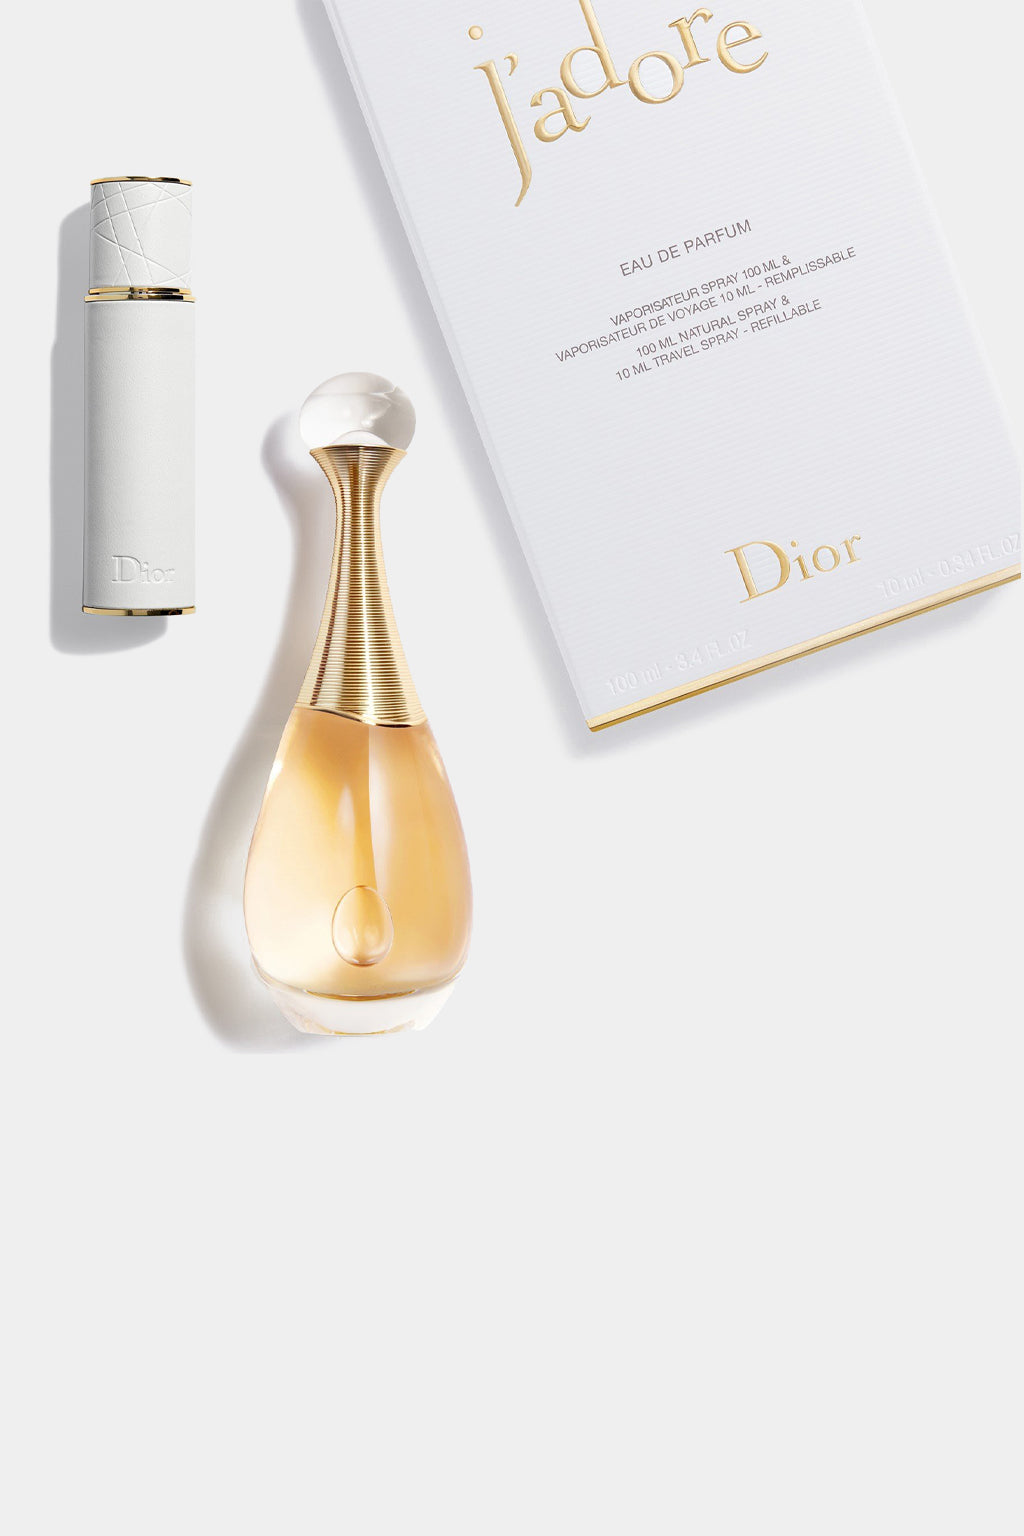 Christian Dior - J’adore Eau de Parfum Travel Spray Set